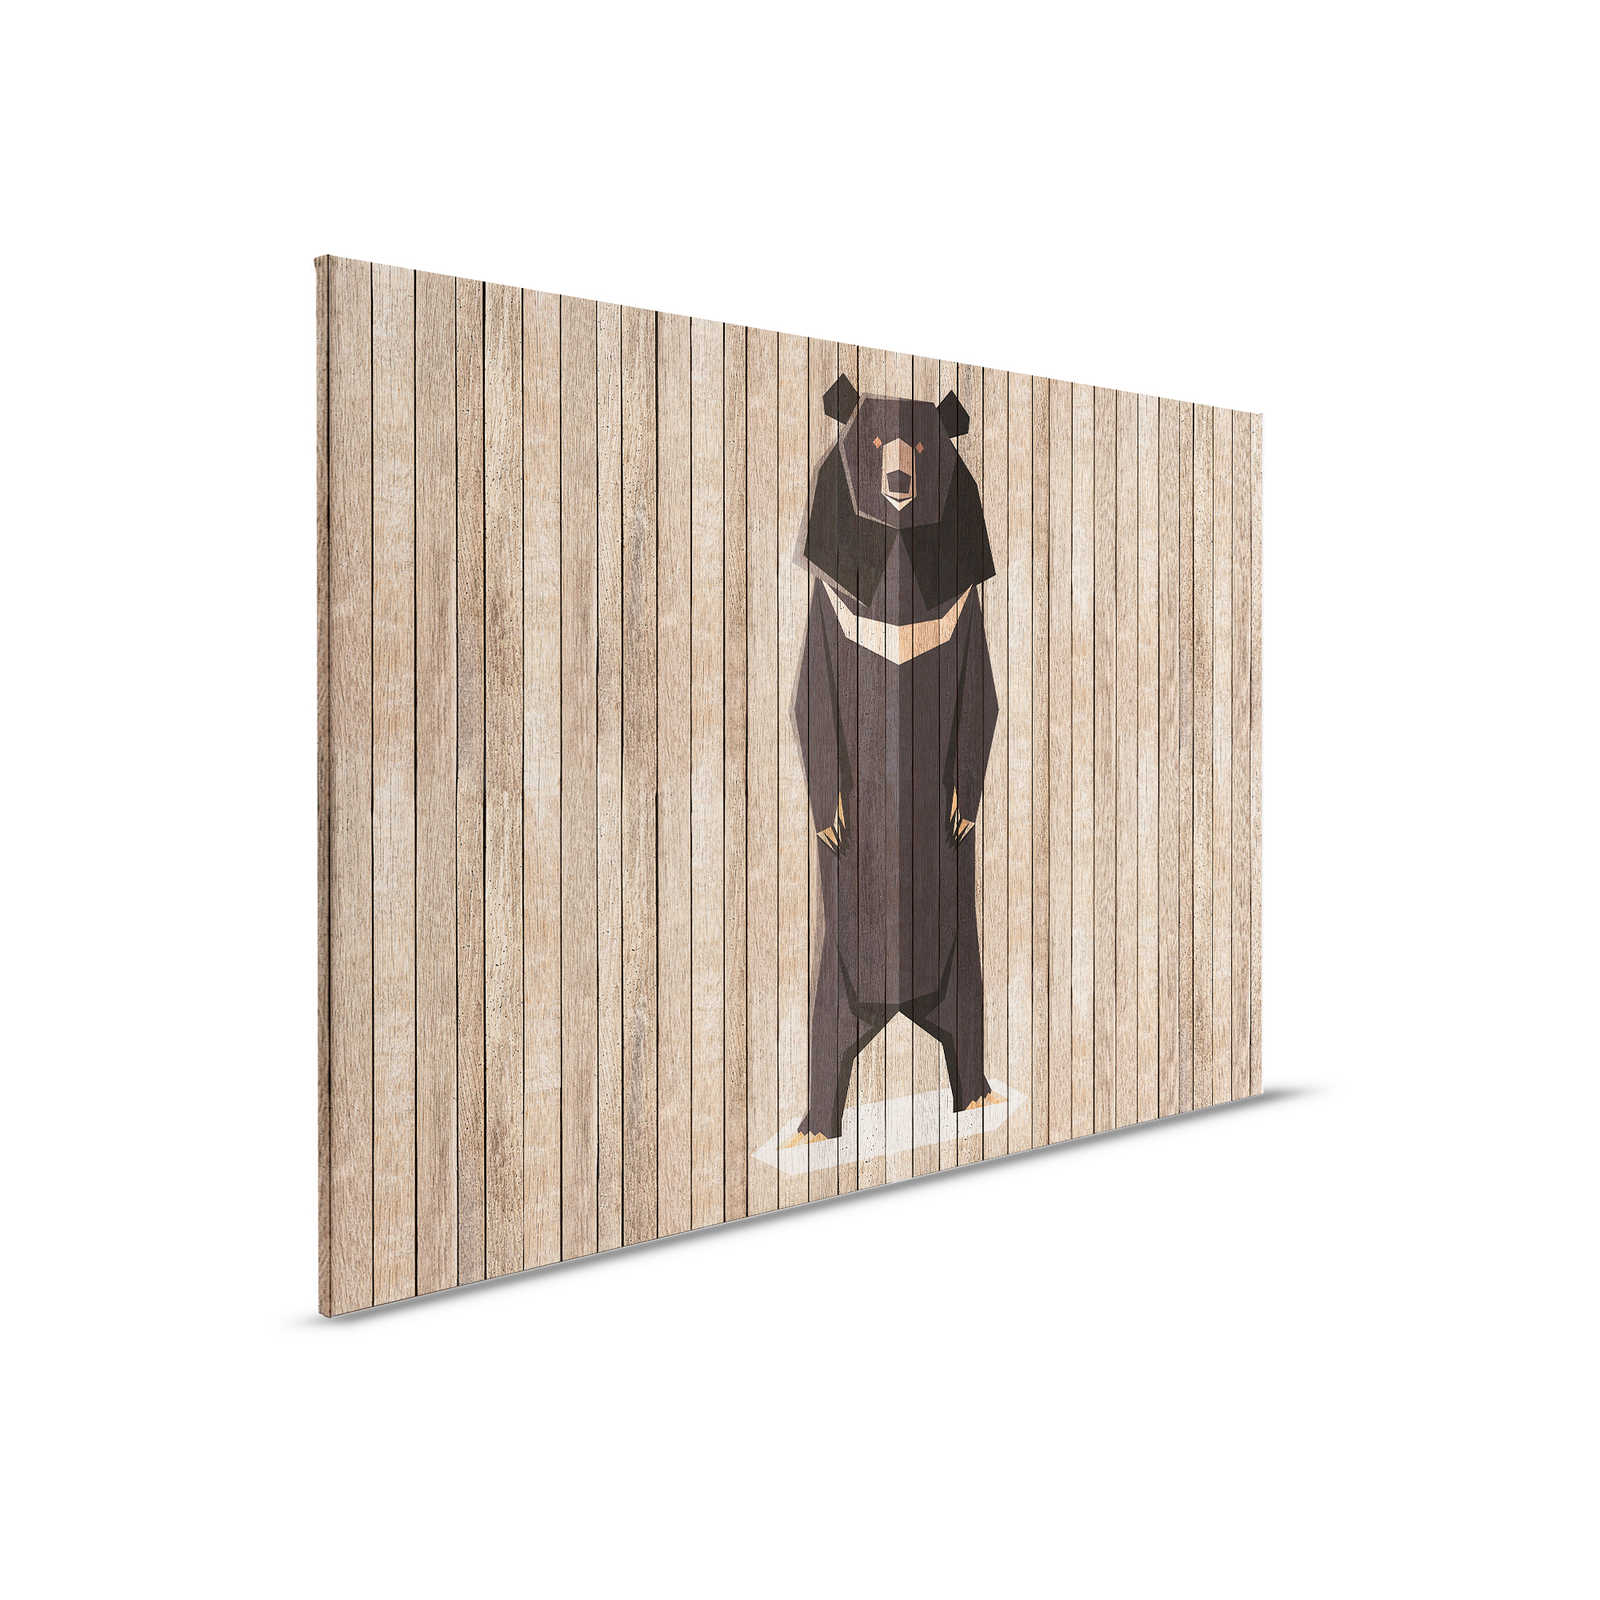 Born to Be Wild 1 - Quadro su tela da parete con orsi - Pannelli di legno - 0,90 m x 0,60 m
